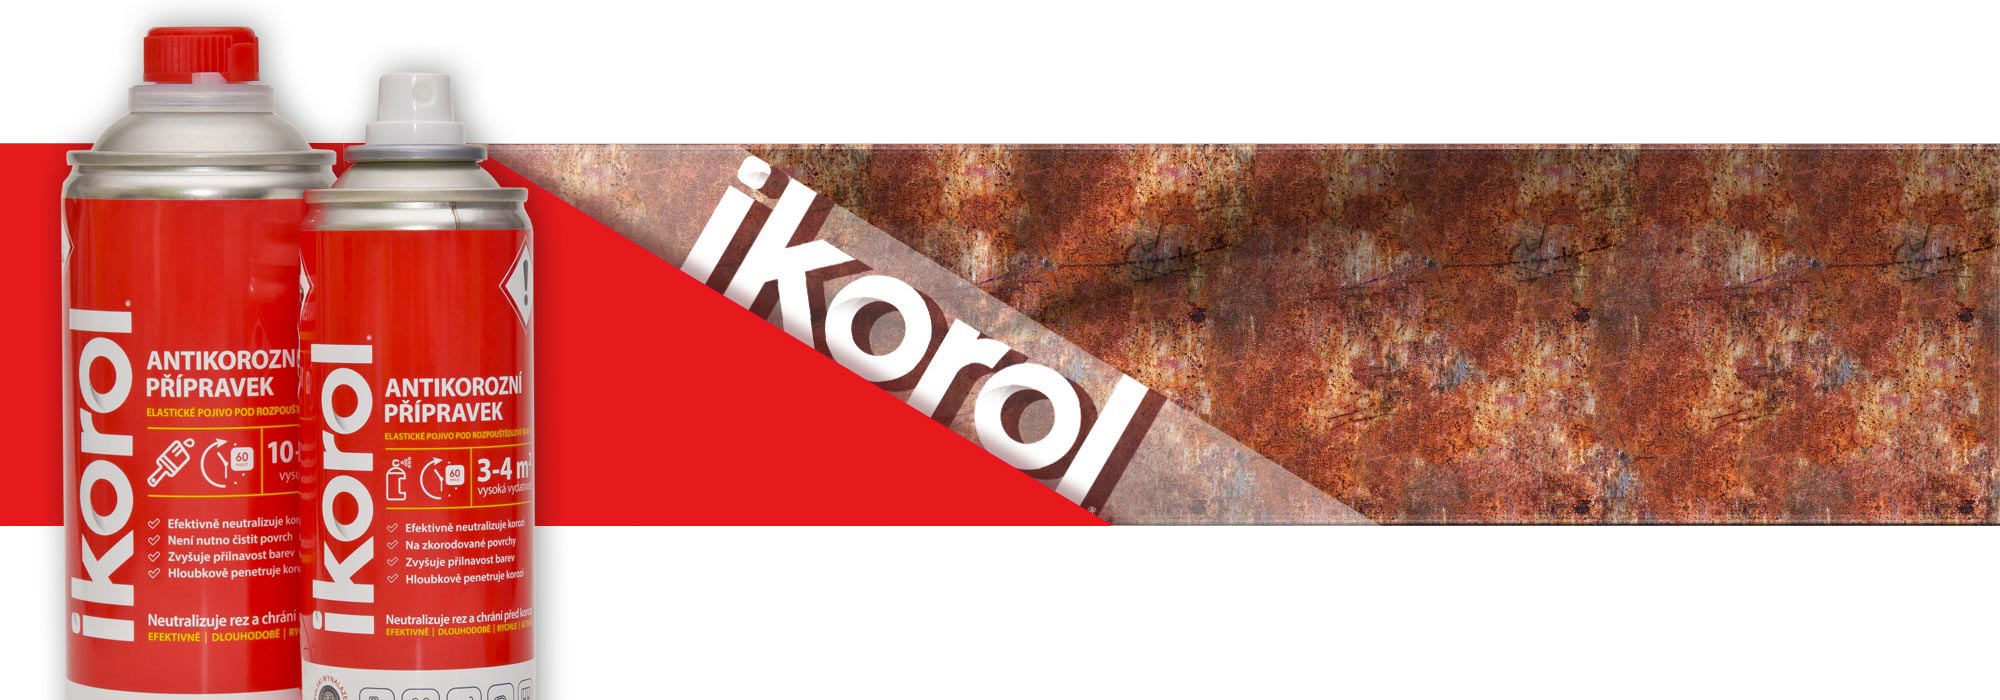 ikorol1.jpg